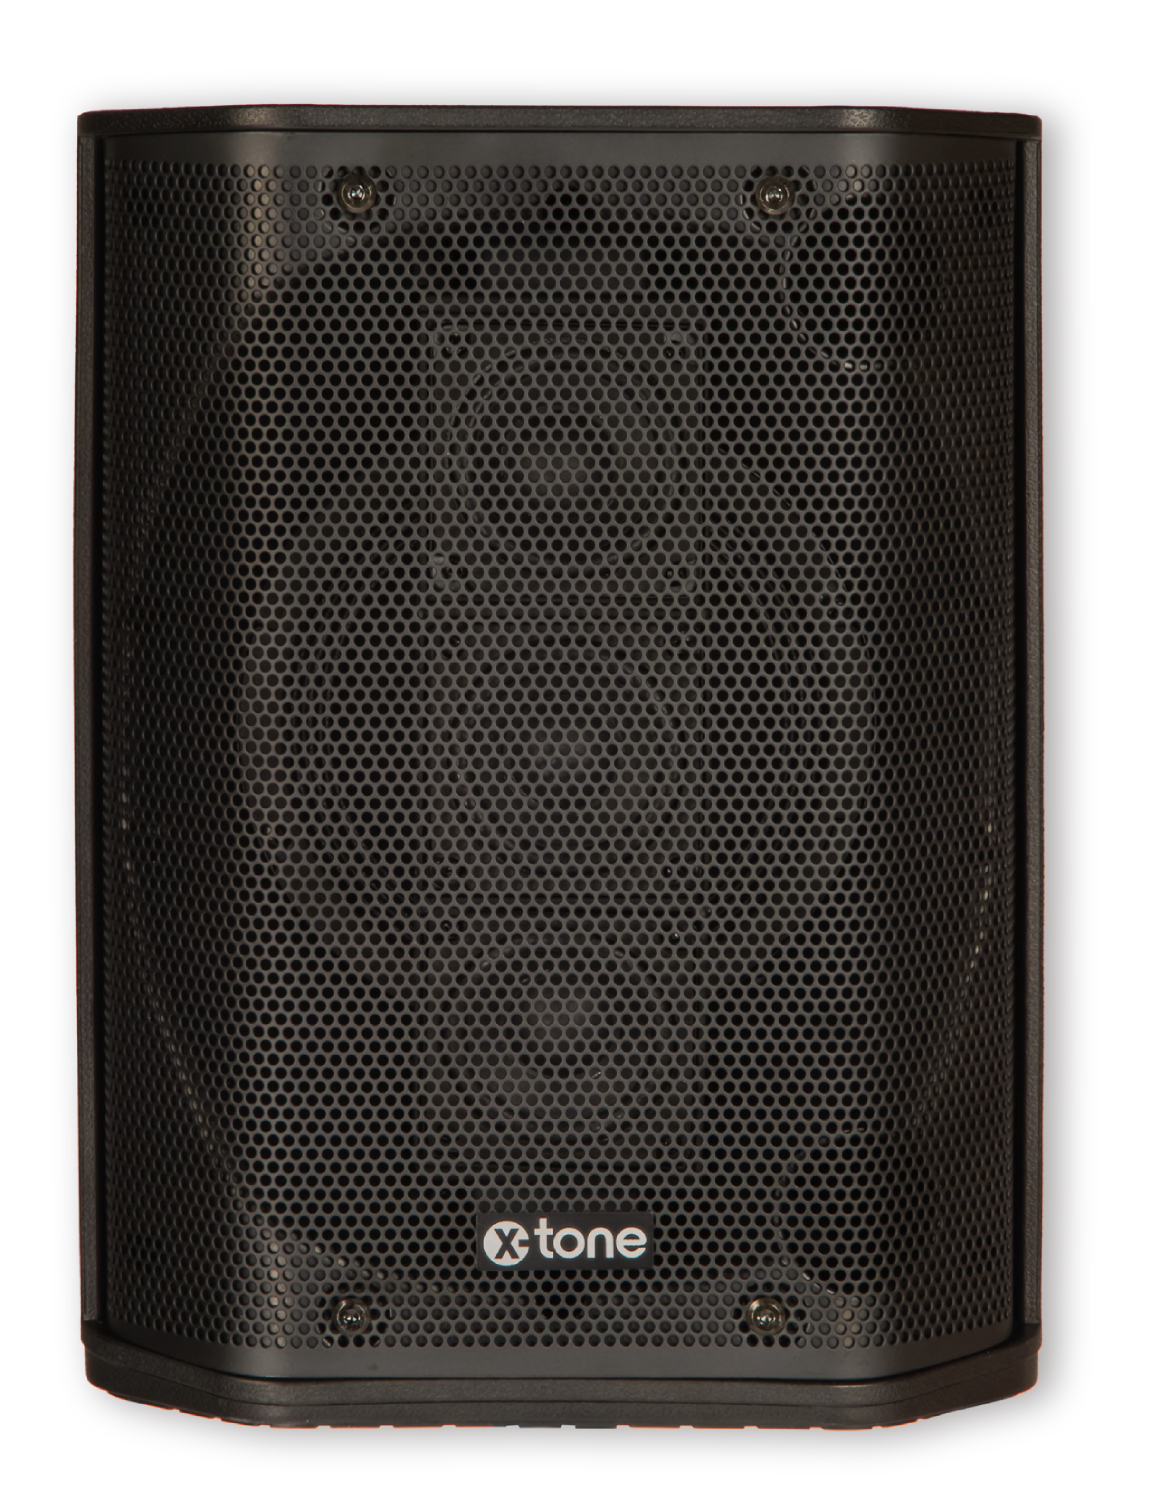 X-tone Y1-b - Sono Portable - Variation 3